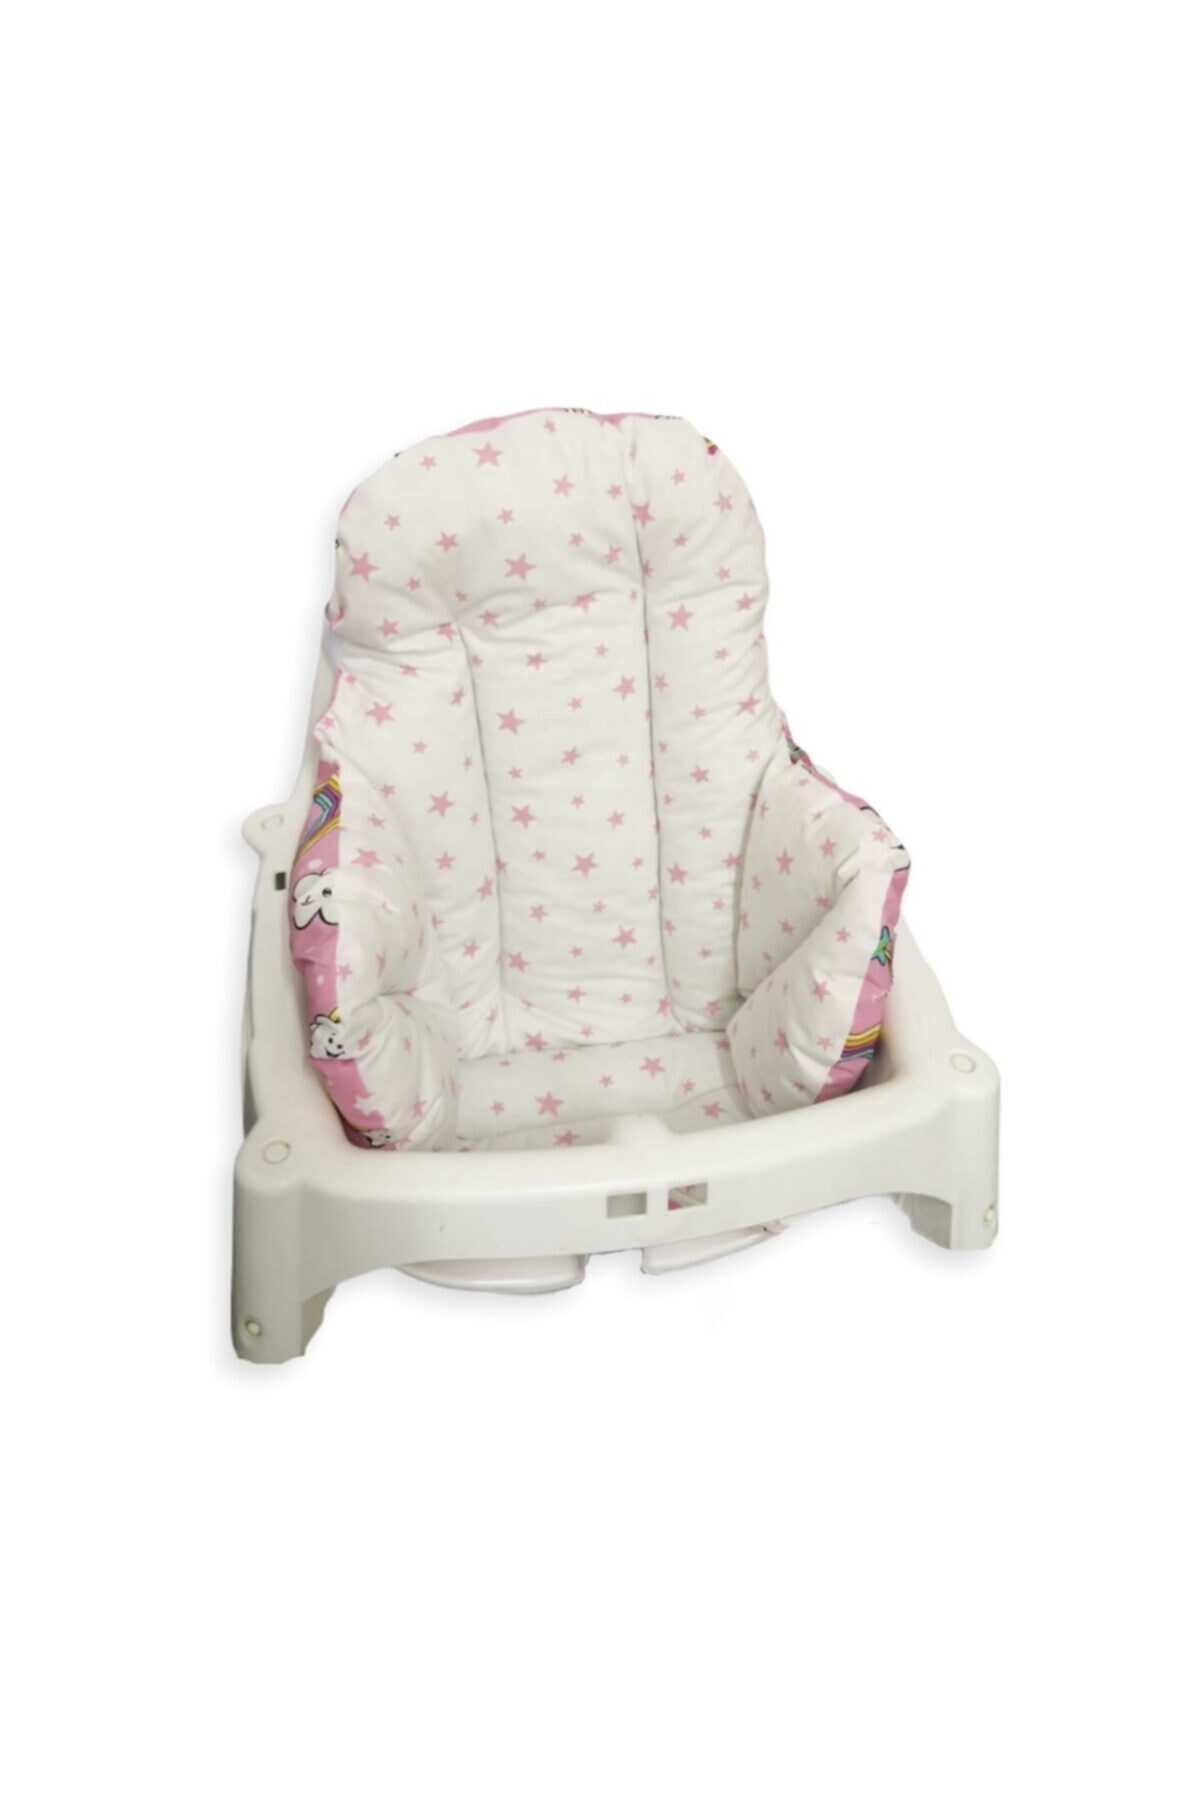 کوسن صندلی کودک دو رو طرح دار سفید صورتی برند Bebek Özel 